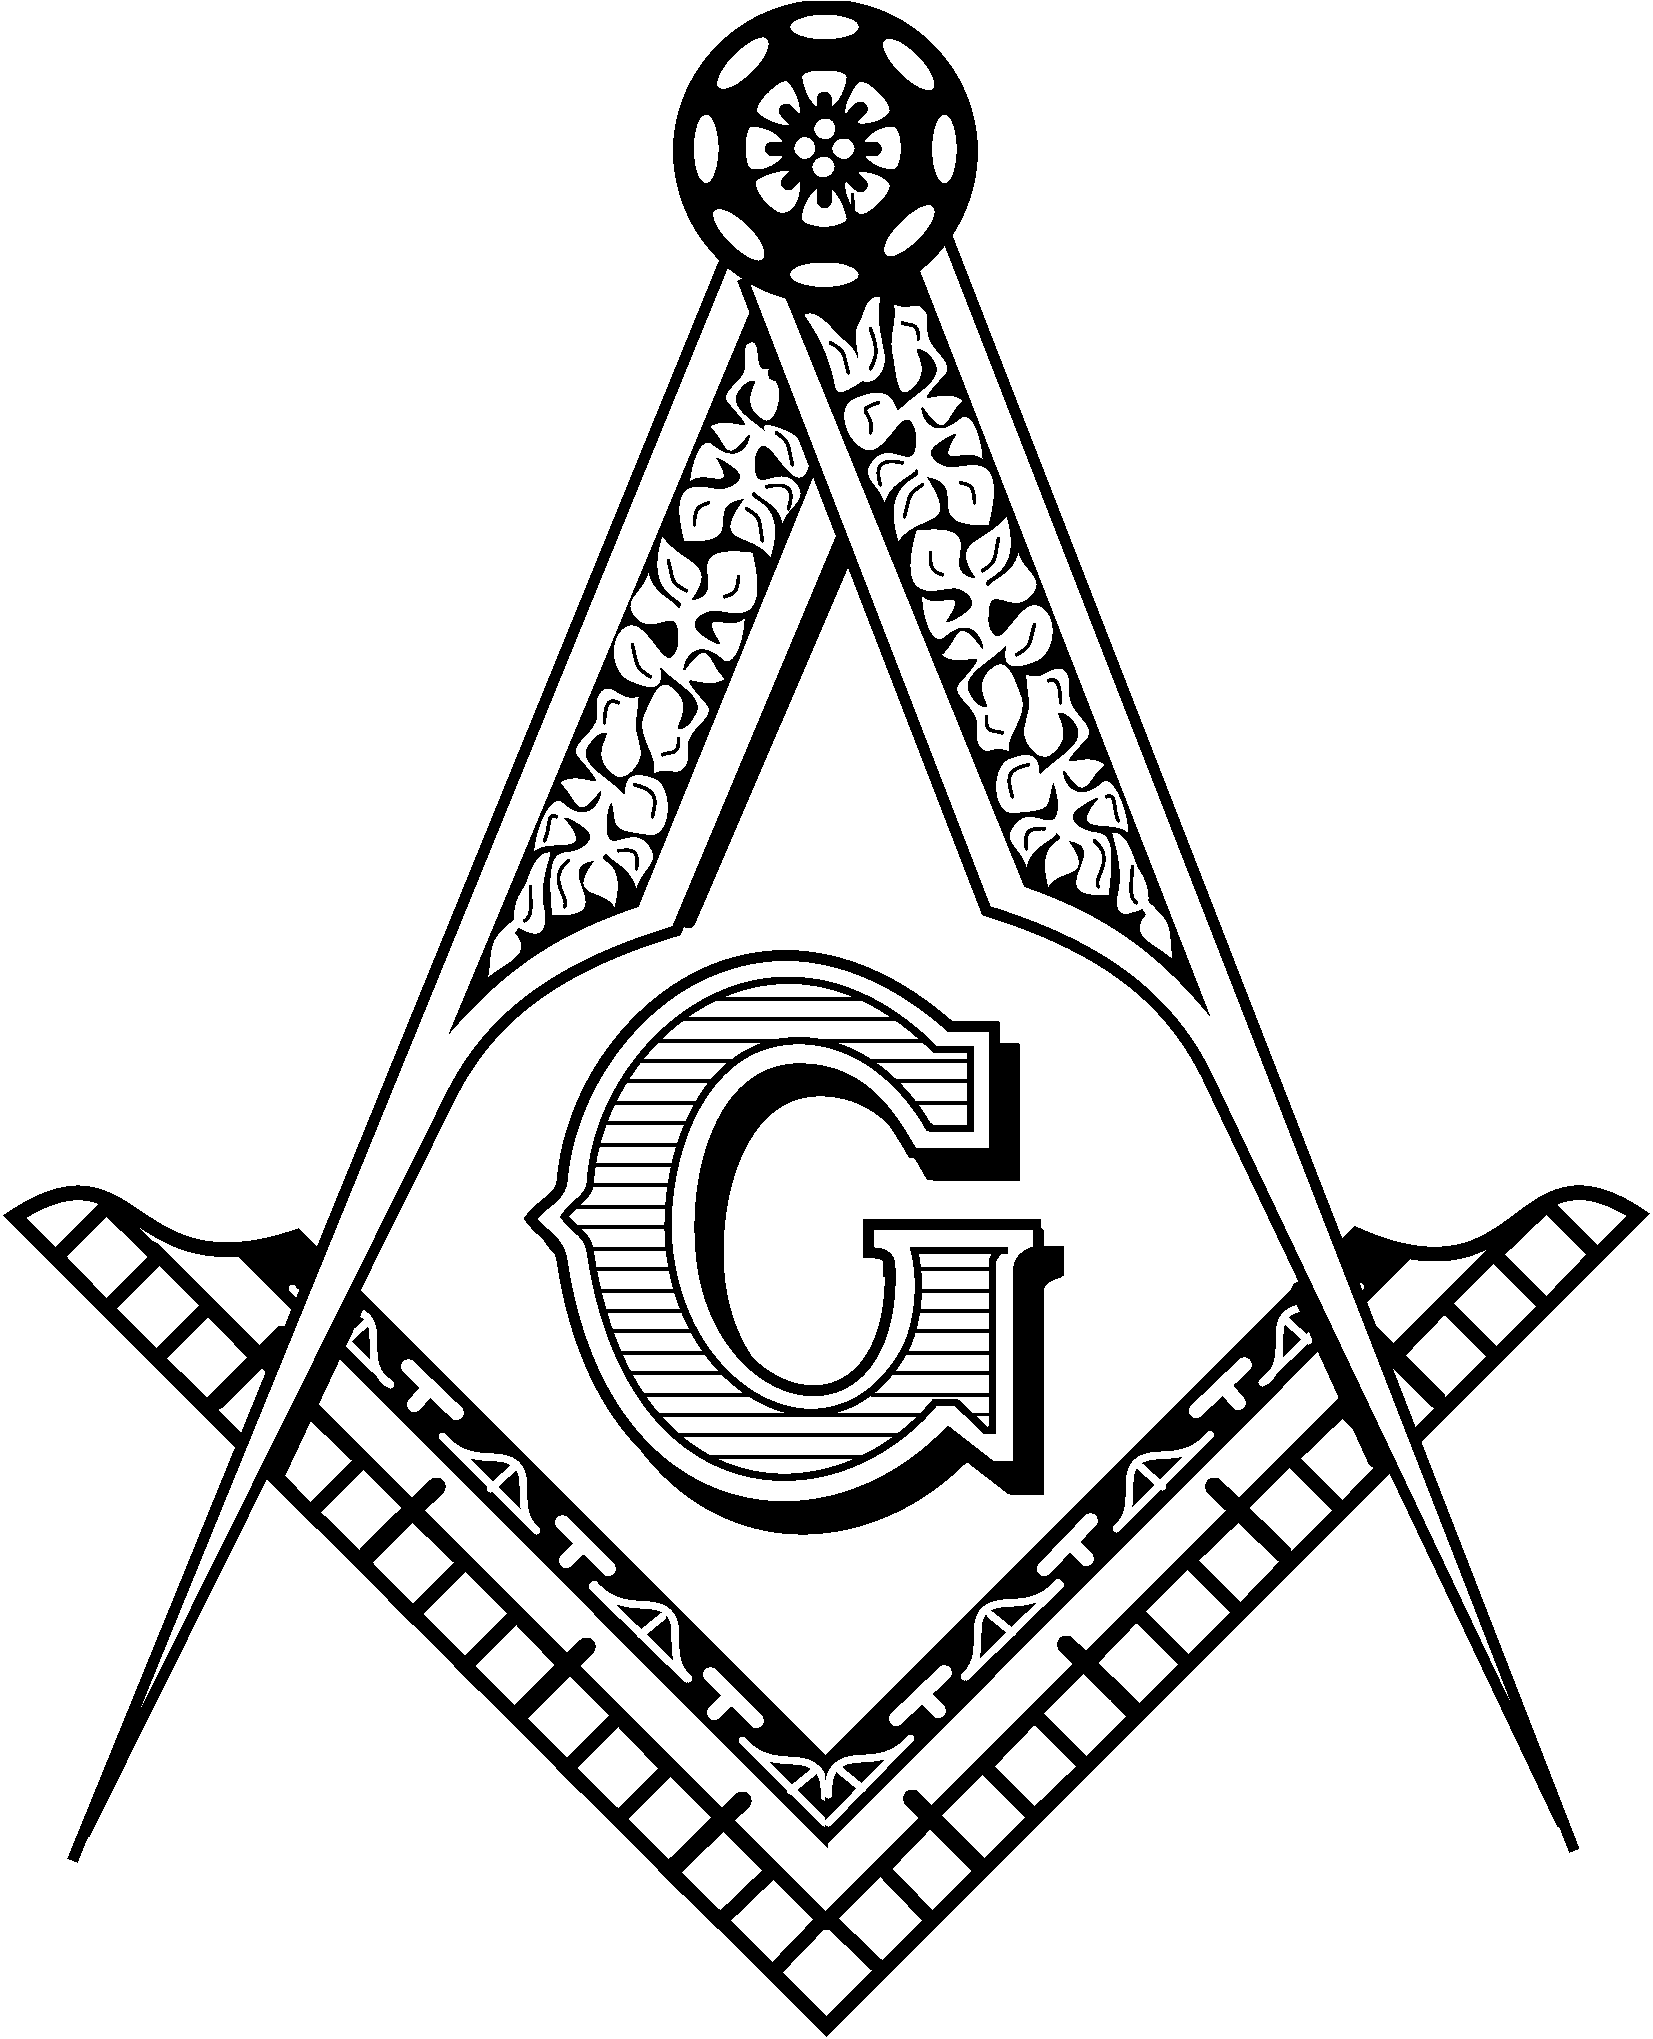 Images For > Masonic Logo